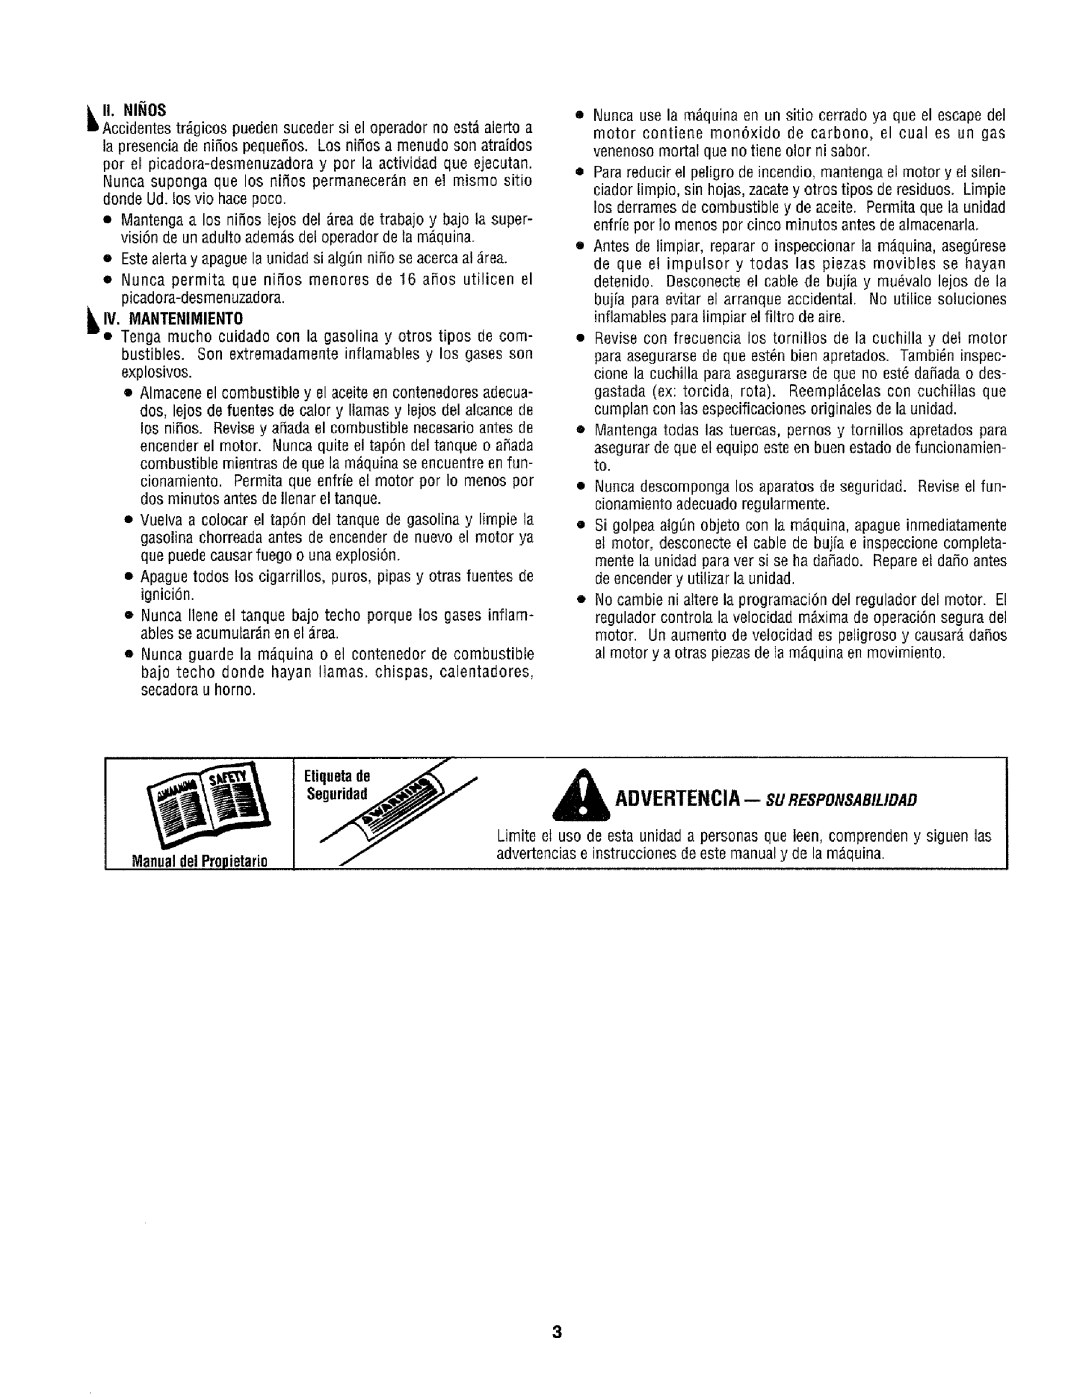 Craftsman 79585 manual ADVERTENCIA-- suRESPONSABIL/DAD, _Iv. Mantenimiento, ManualdelPropietario 